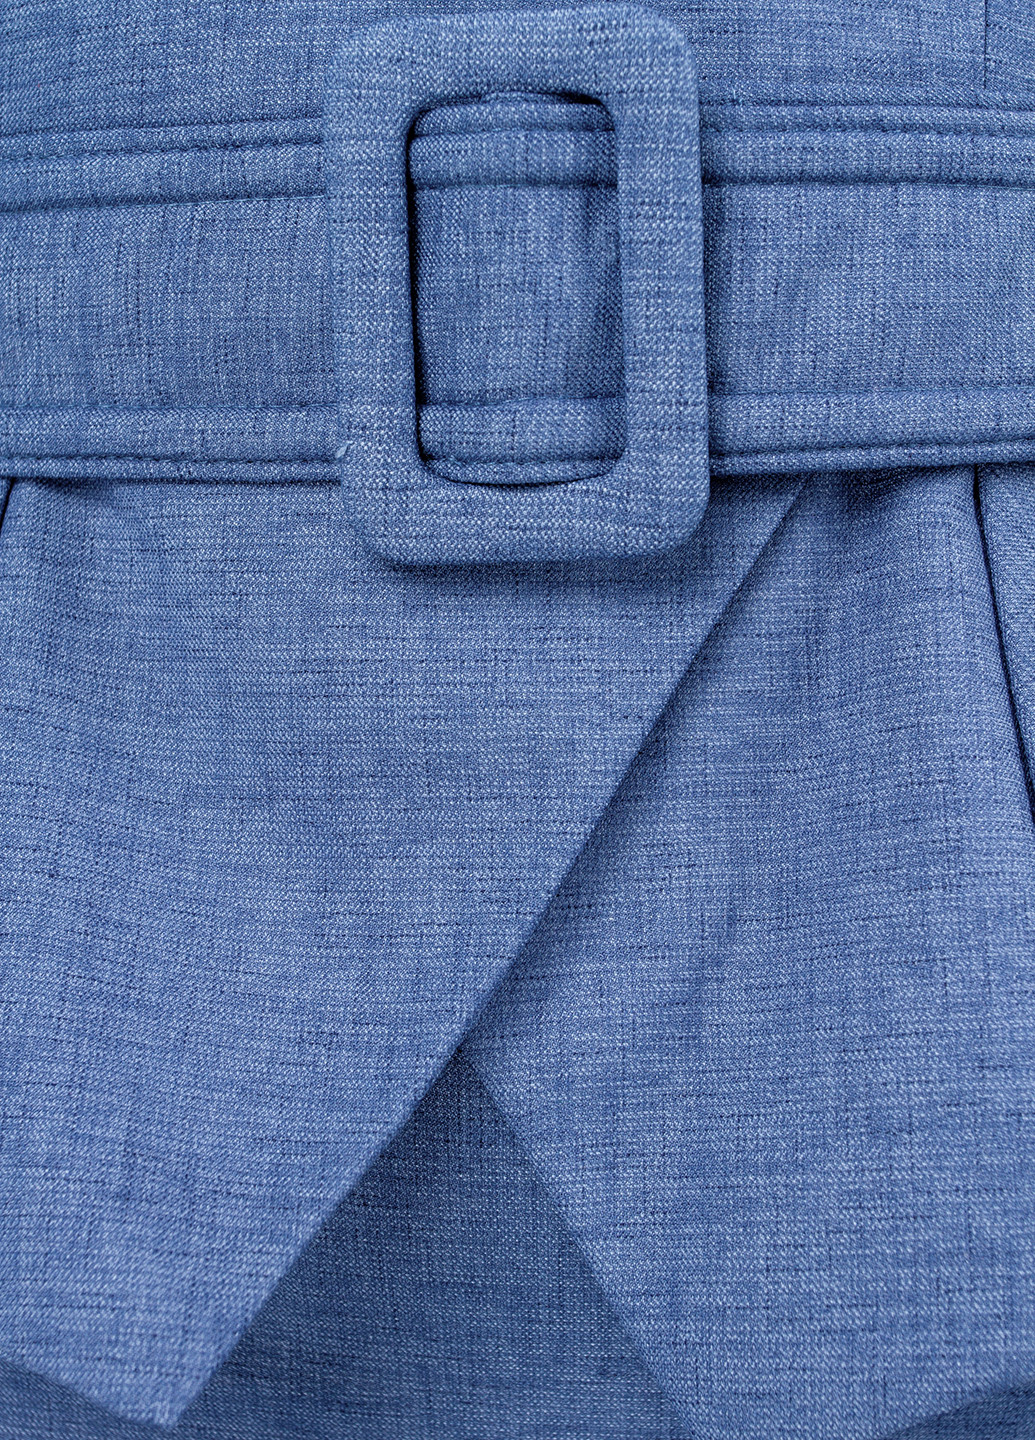 Костюм (жакет, юбка) BGL Комплект (жакет и юбка) юбочный меланж синий деловой вискоза